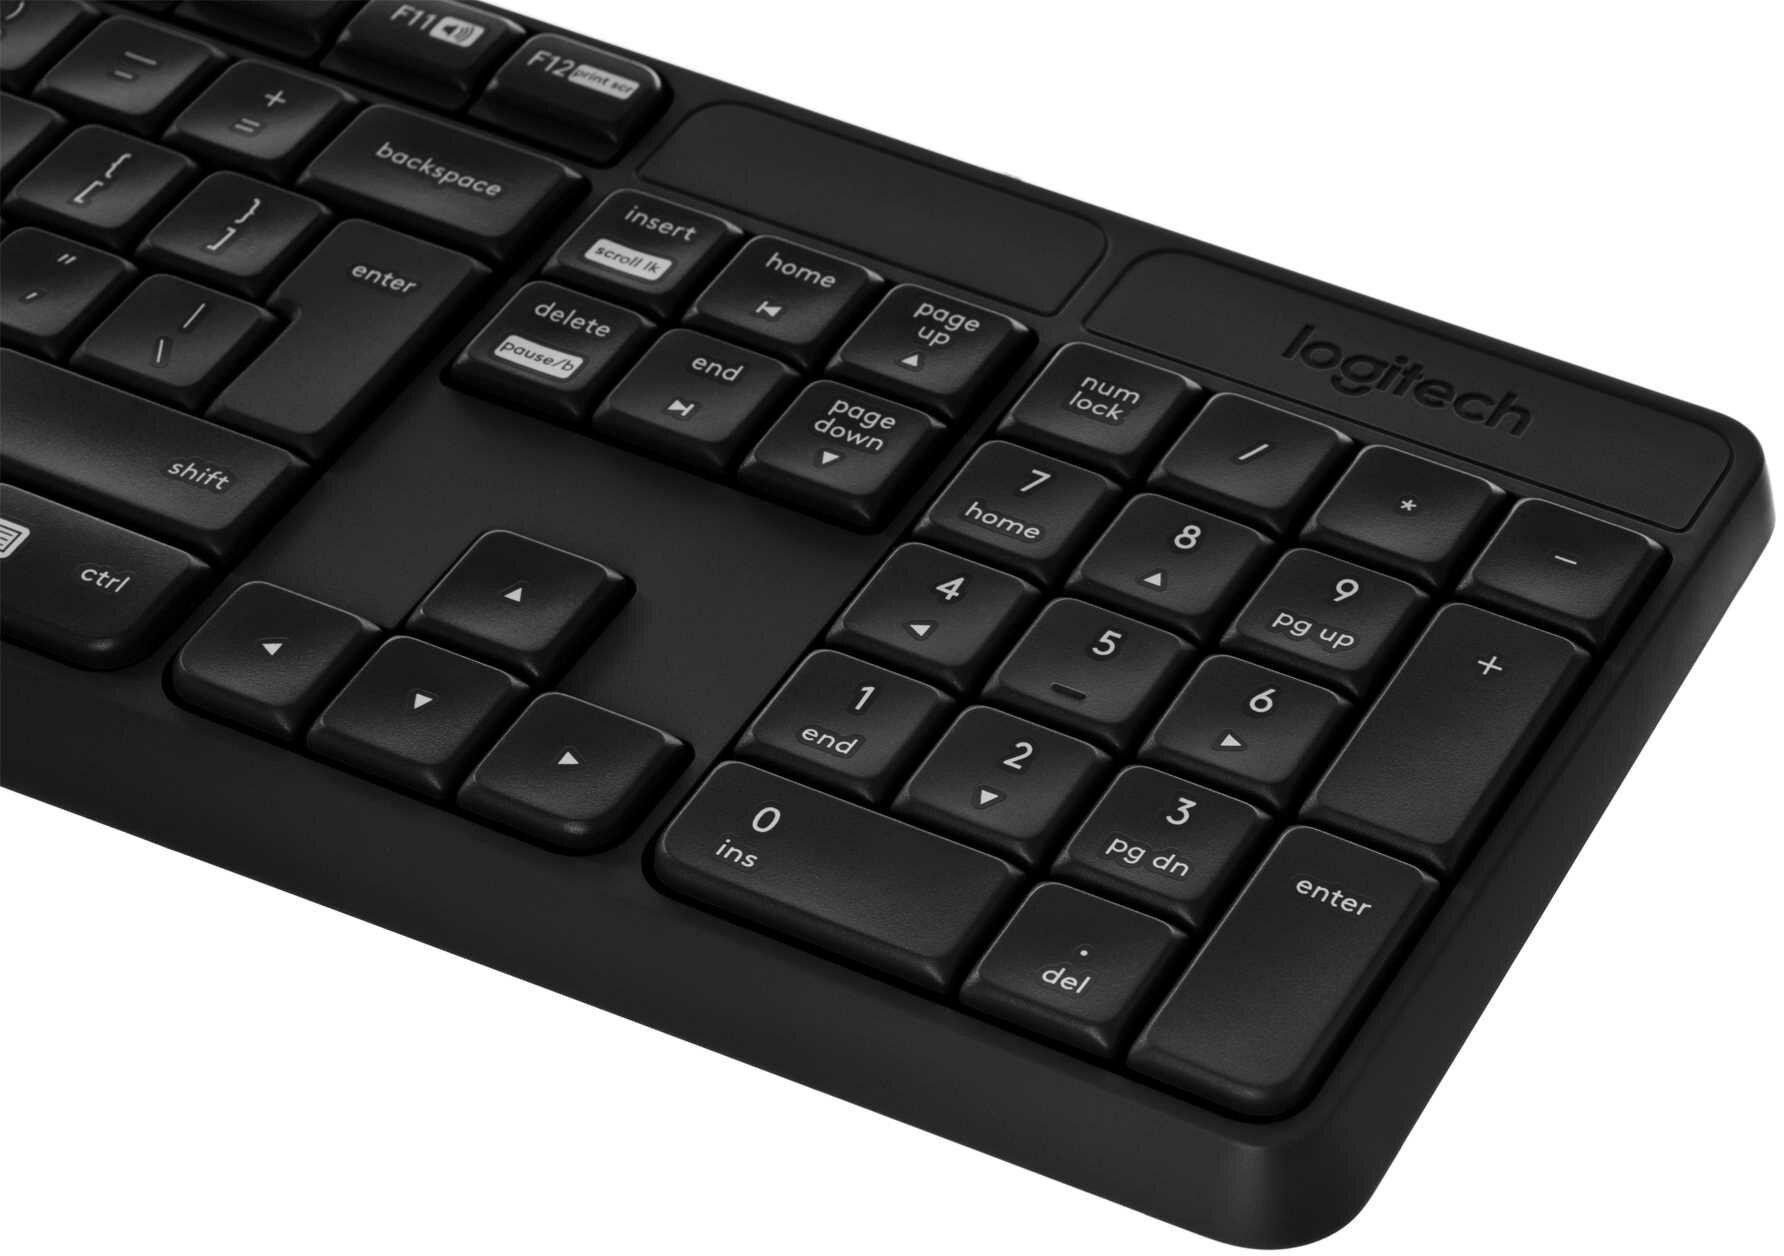 Logitech MK235 - klawisze pełnowymiarowej klawiatury zaprogramowane do odnoszenia wszelkich sukcesów!